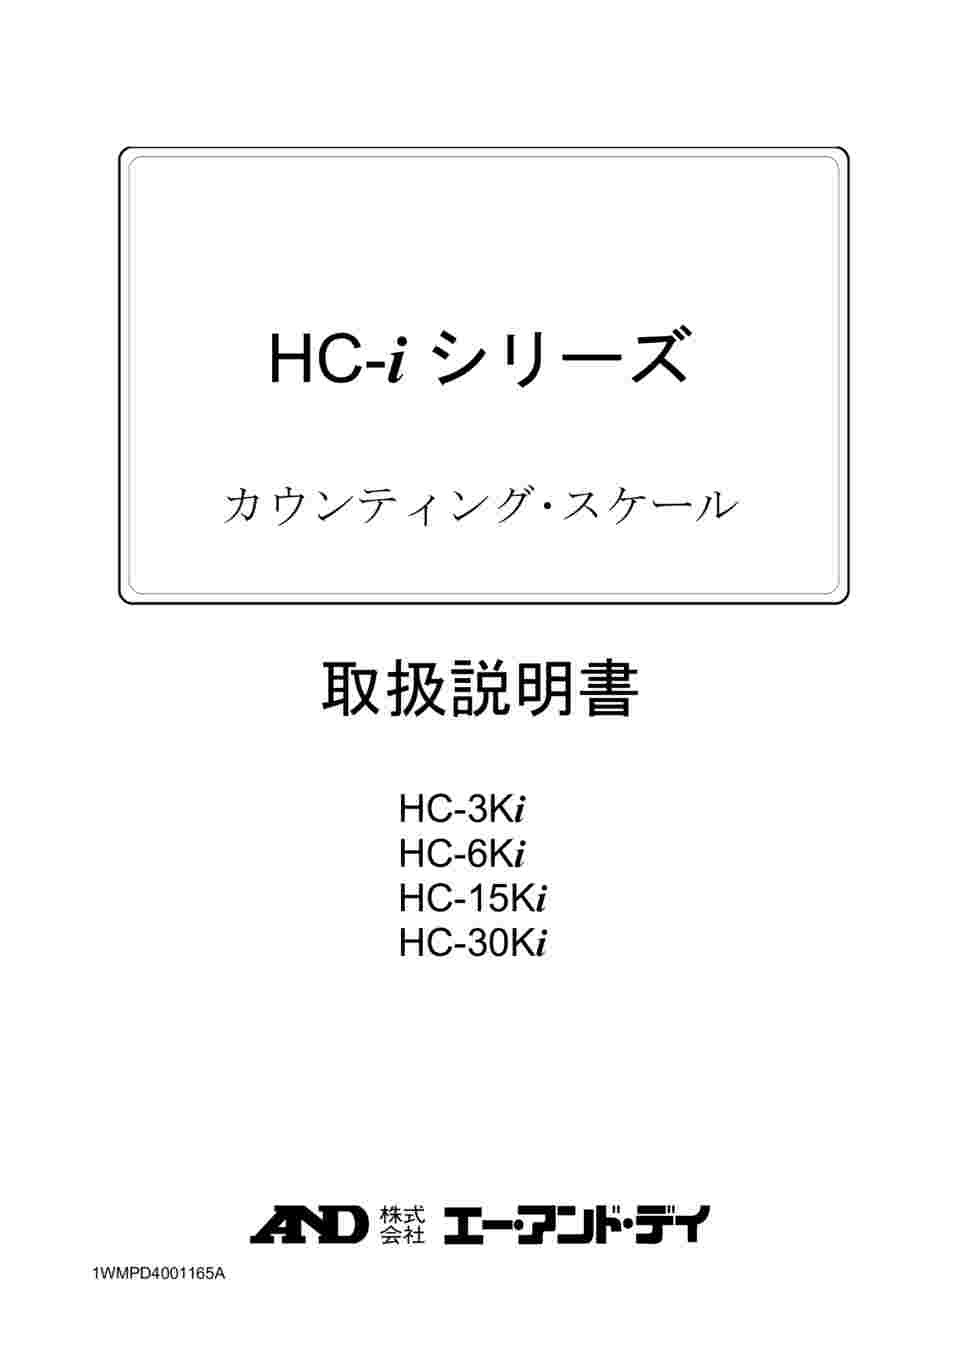 64-4049-41 セパレート可能 カウンティング・スケール(個数計) HC-i ...